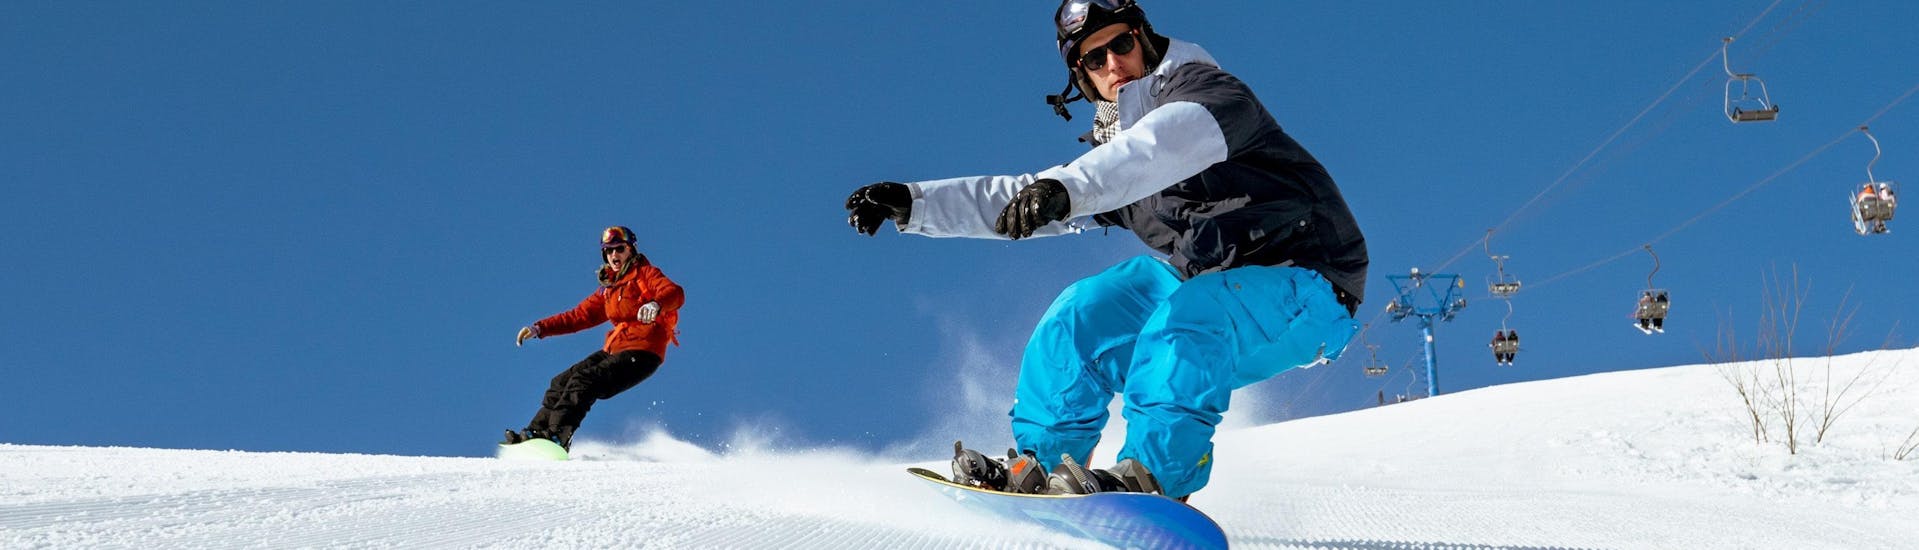 Privé snowboardlessen vanaf 3 jaar voor alle niveaus.